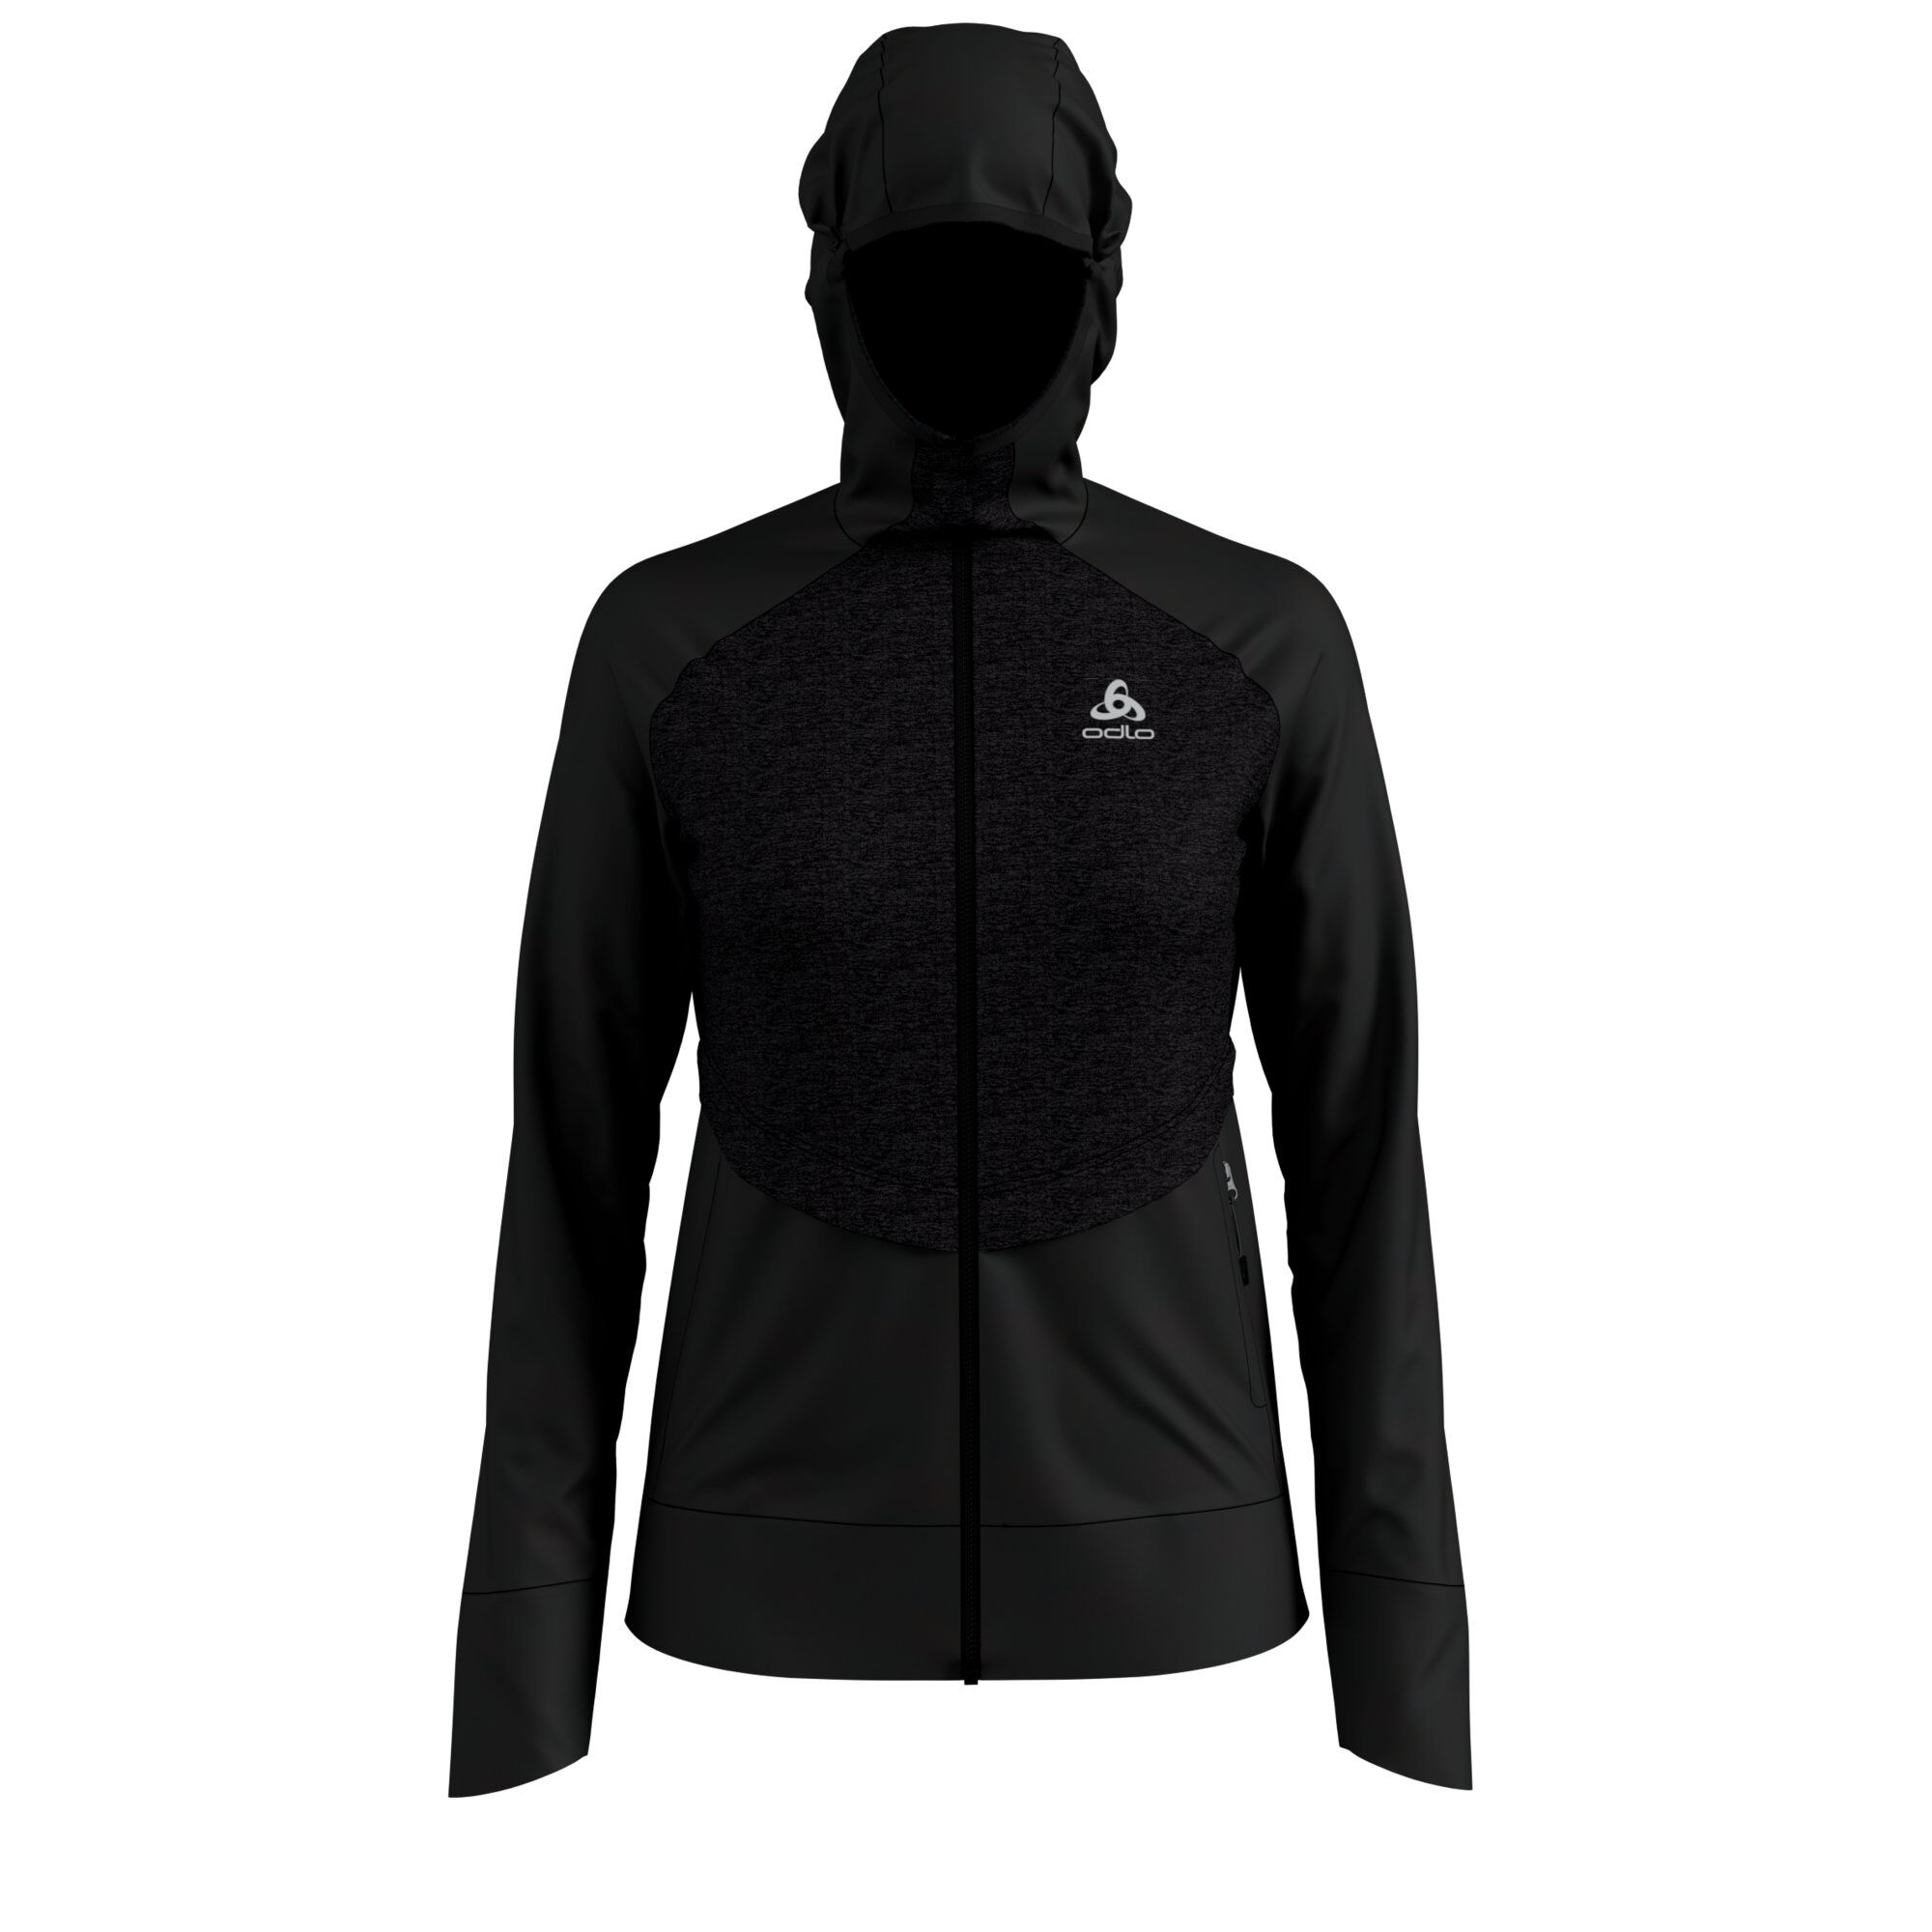 Odlo Millennium Yakwarm Hoody Midlayer Full Zip - Fleece jacket - Women's